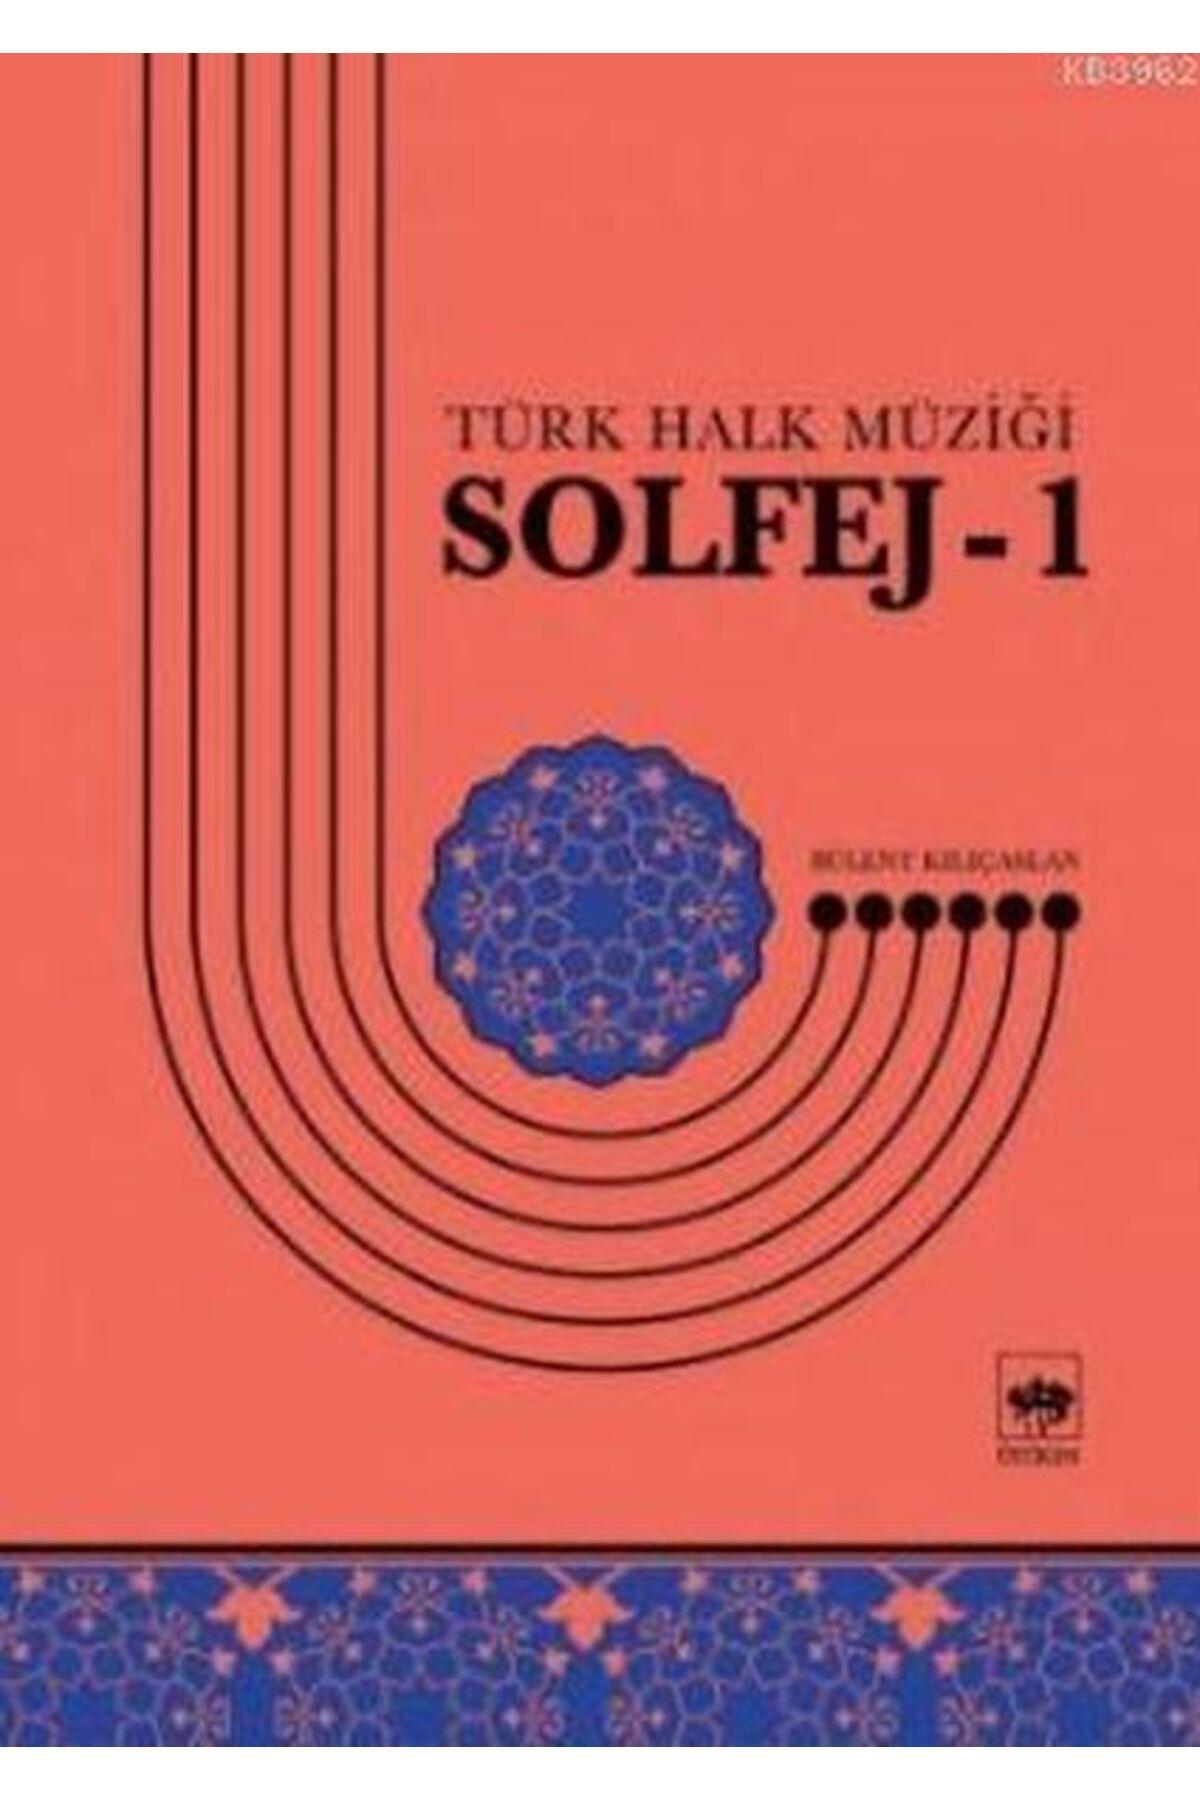 Ötüken Neşriyat Solfej-1 Türk Halk Müziğii